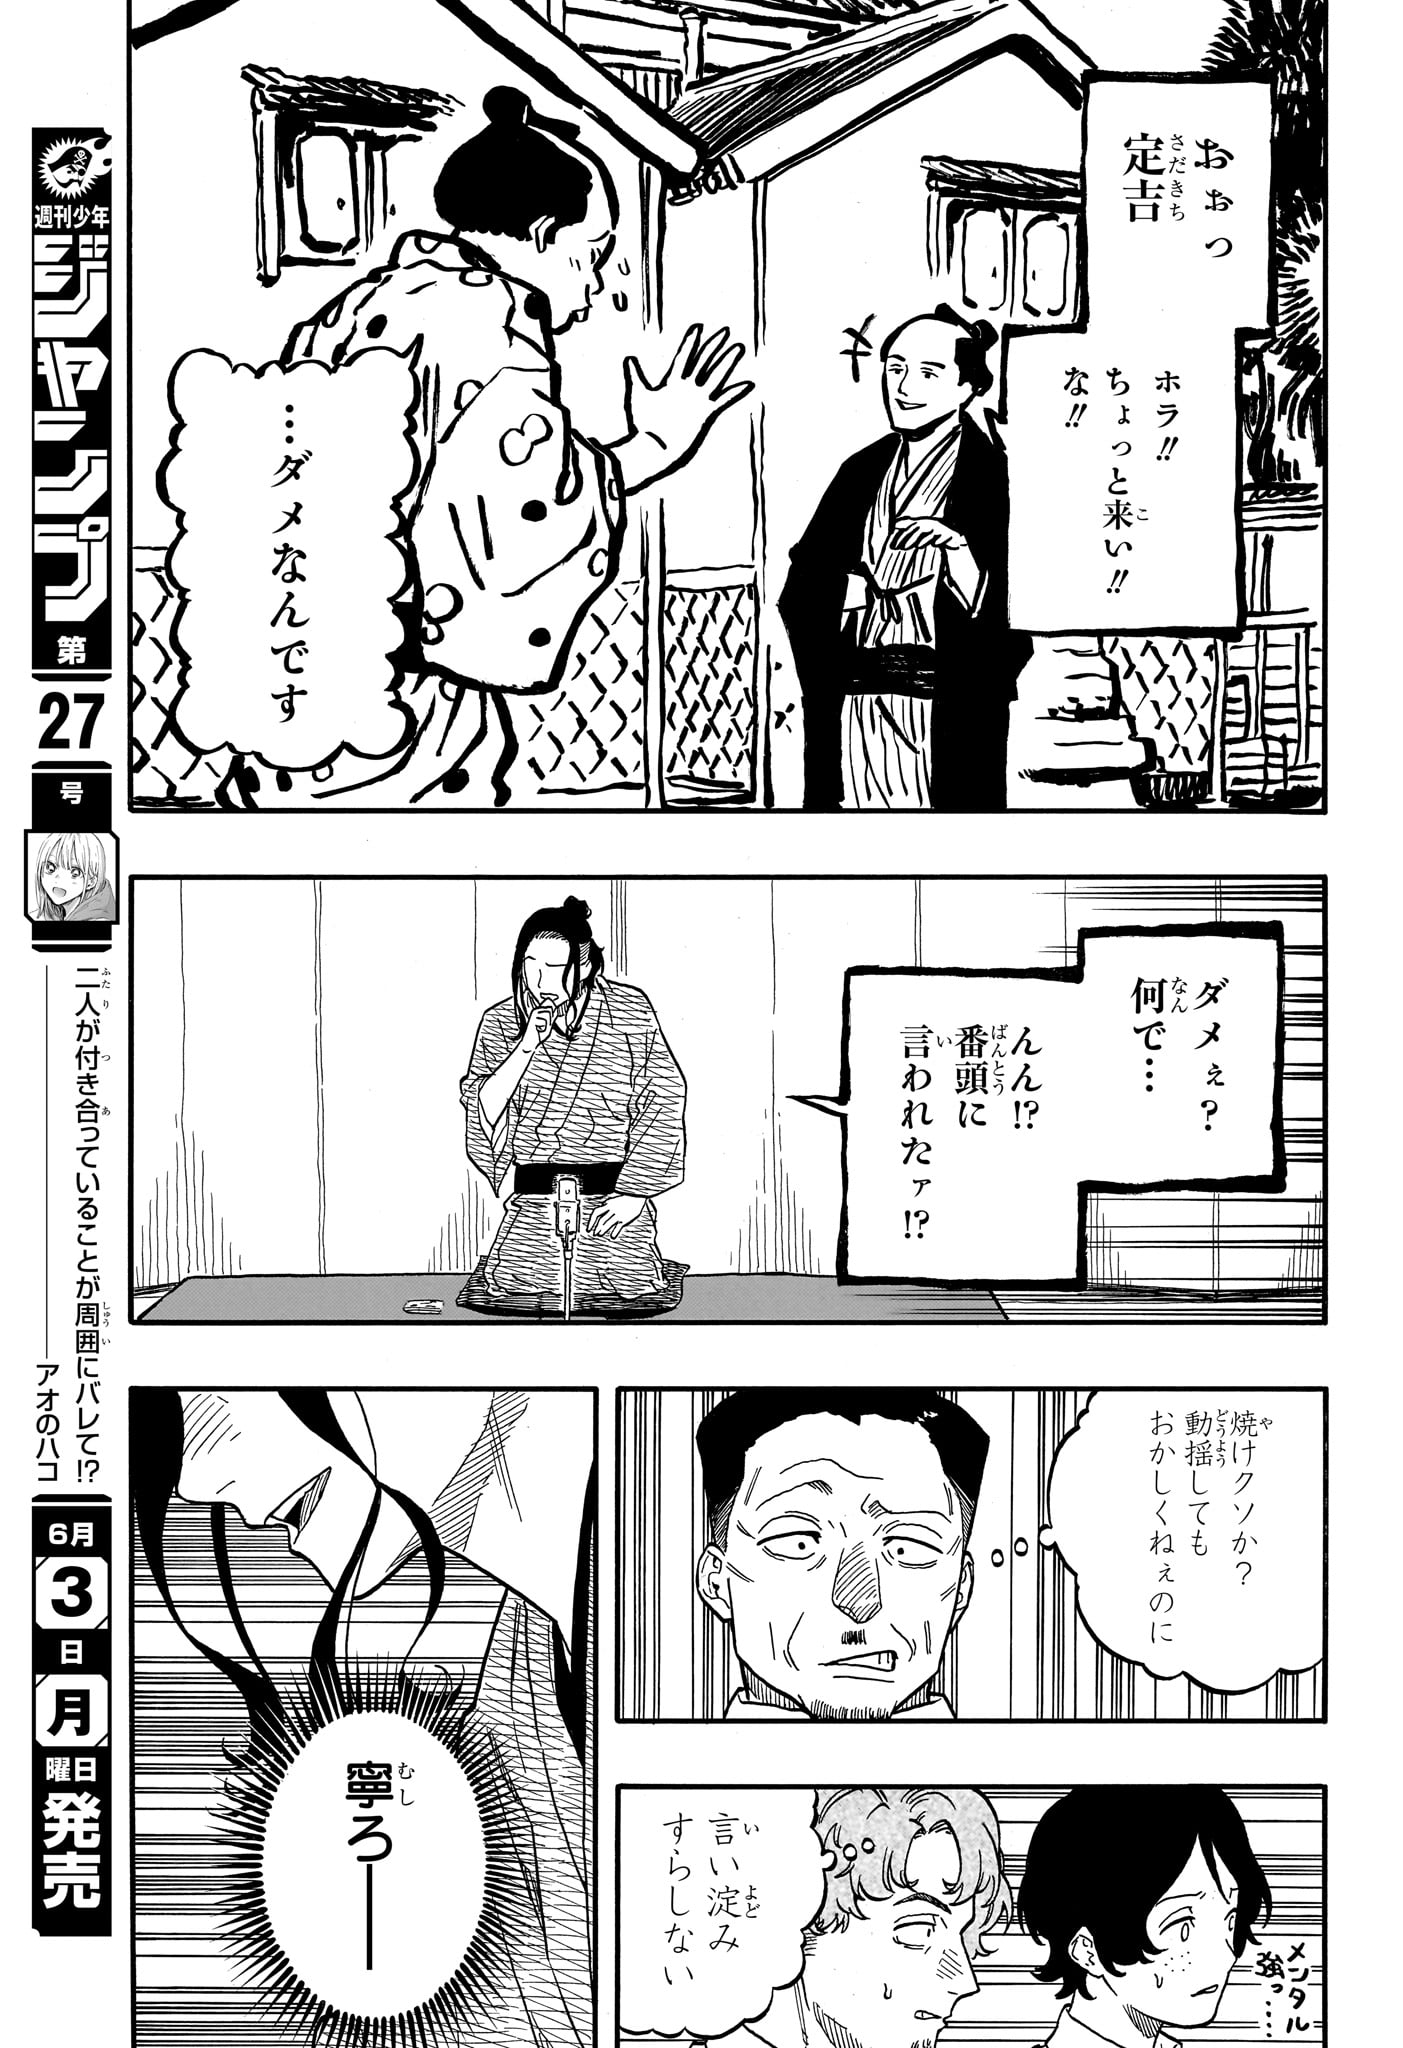 Akane-Banashi - Chapter 111 - Page 11